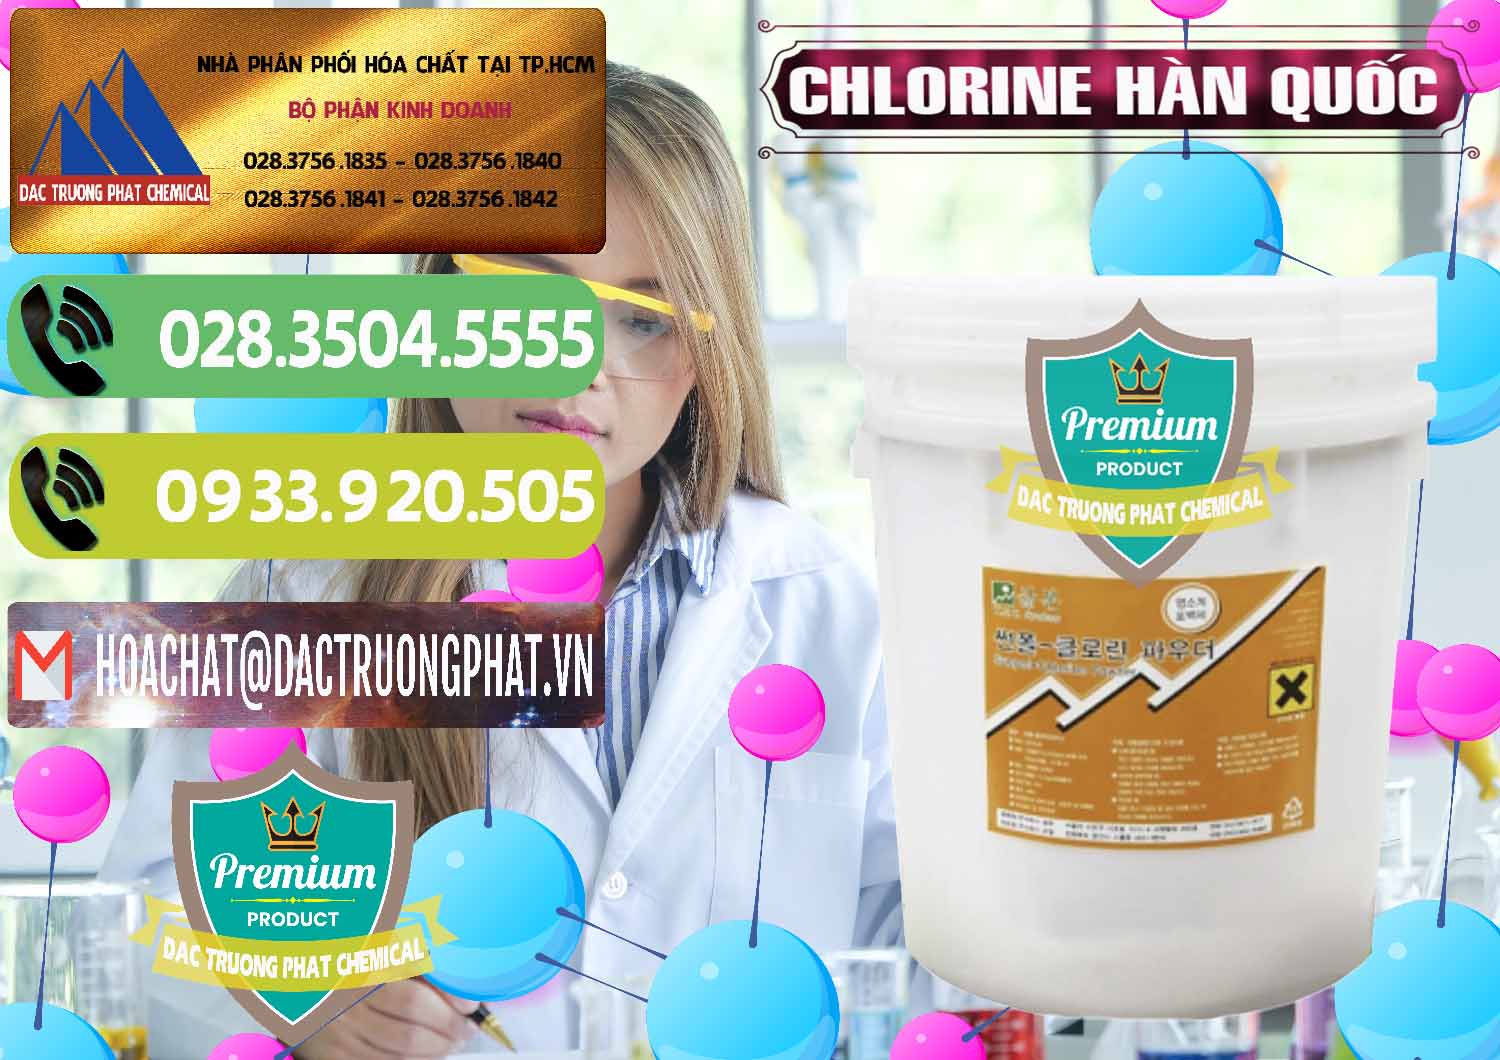 Nơi chuyên cung cấp & bán Chlorine – Clorin 70% Hàn Quốc Korea - 0345 - Cty chuyên cung ứng - phân phối hóa chất tại TP.HCM - hoachatmientay.vn